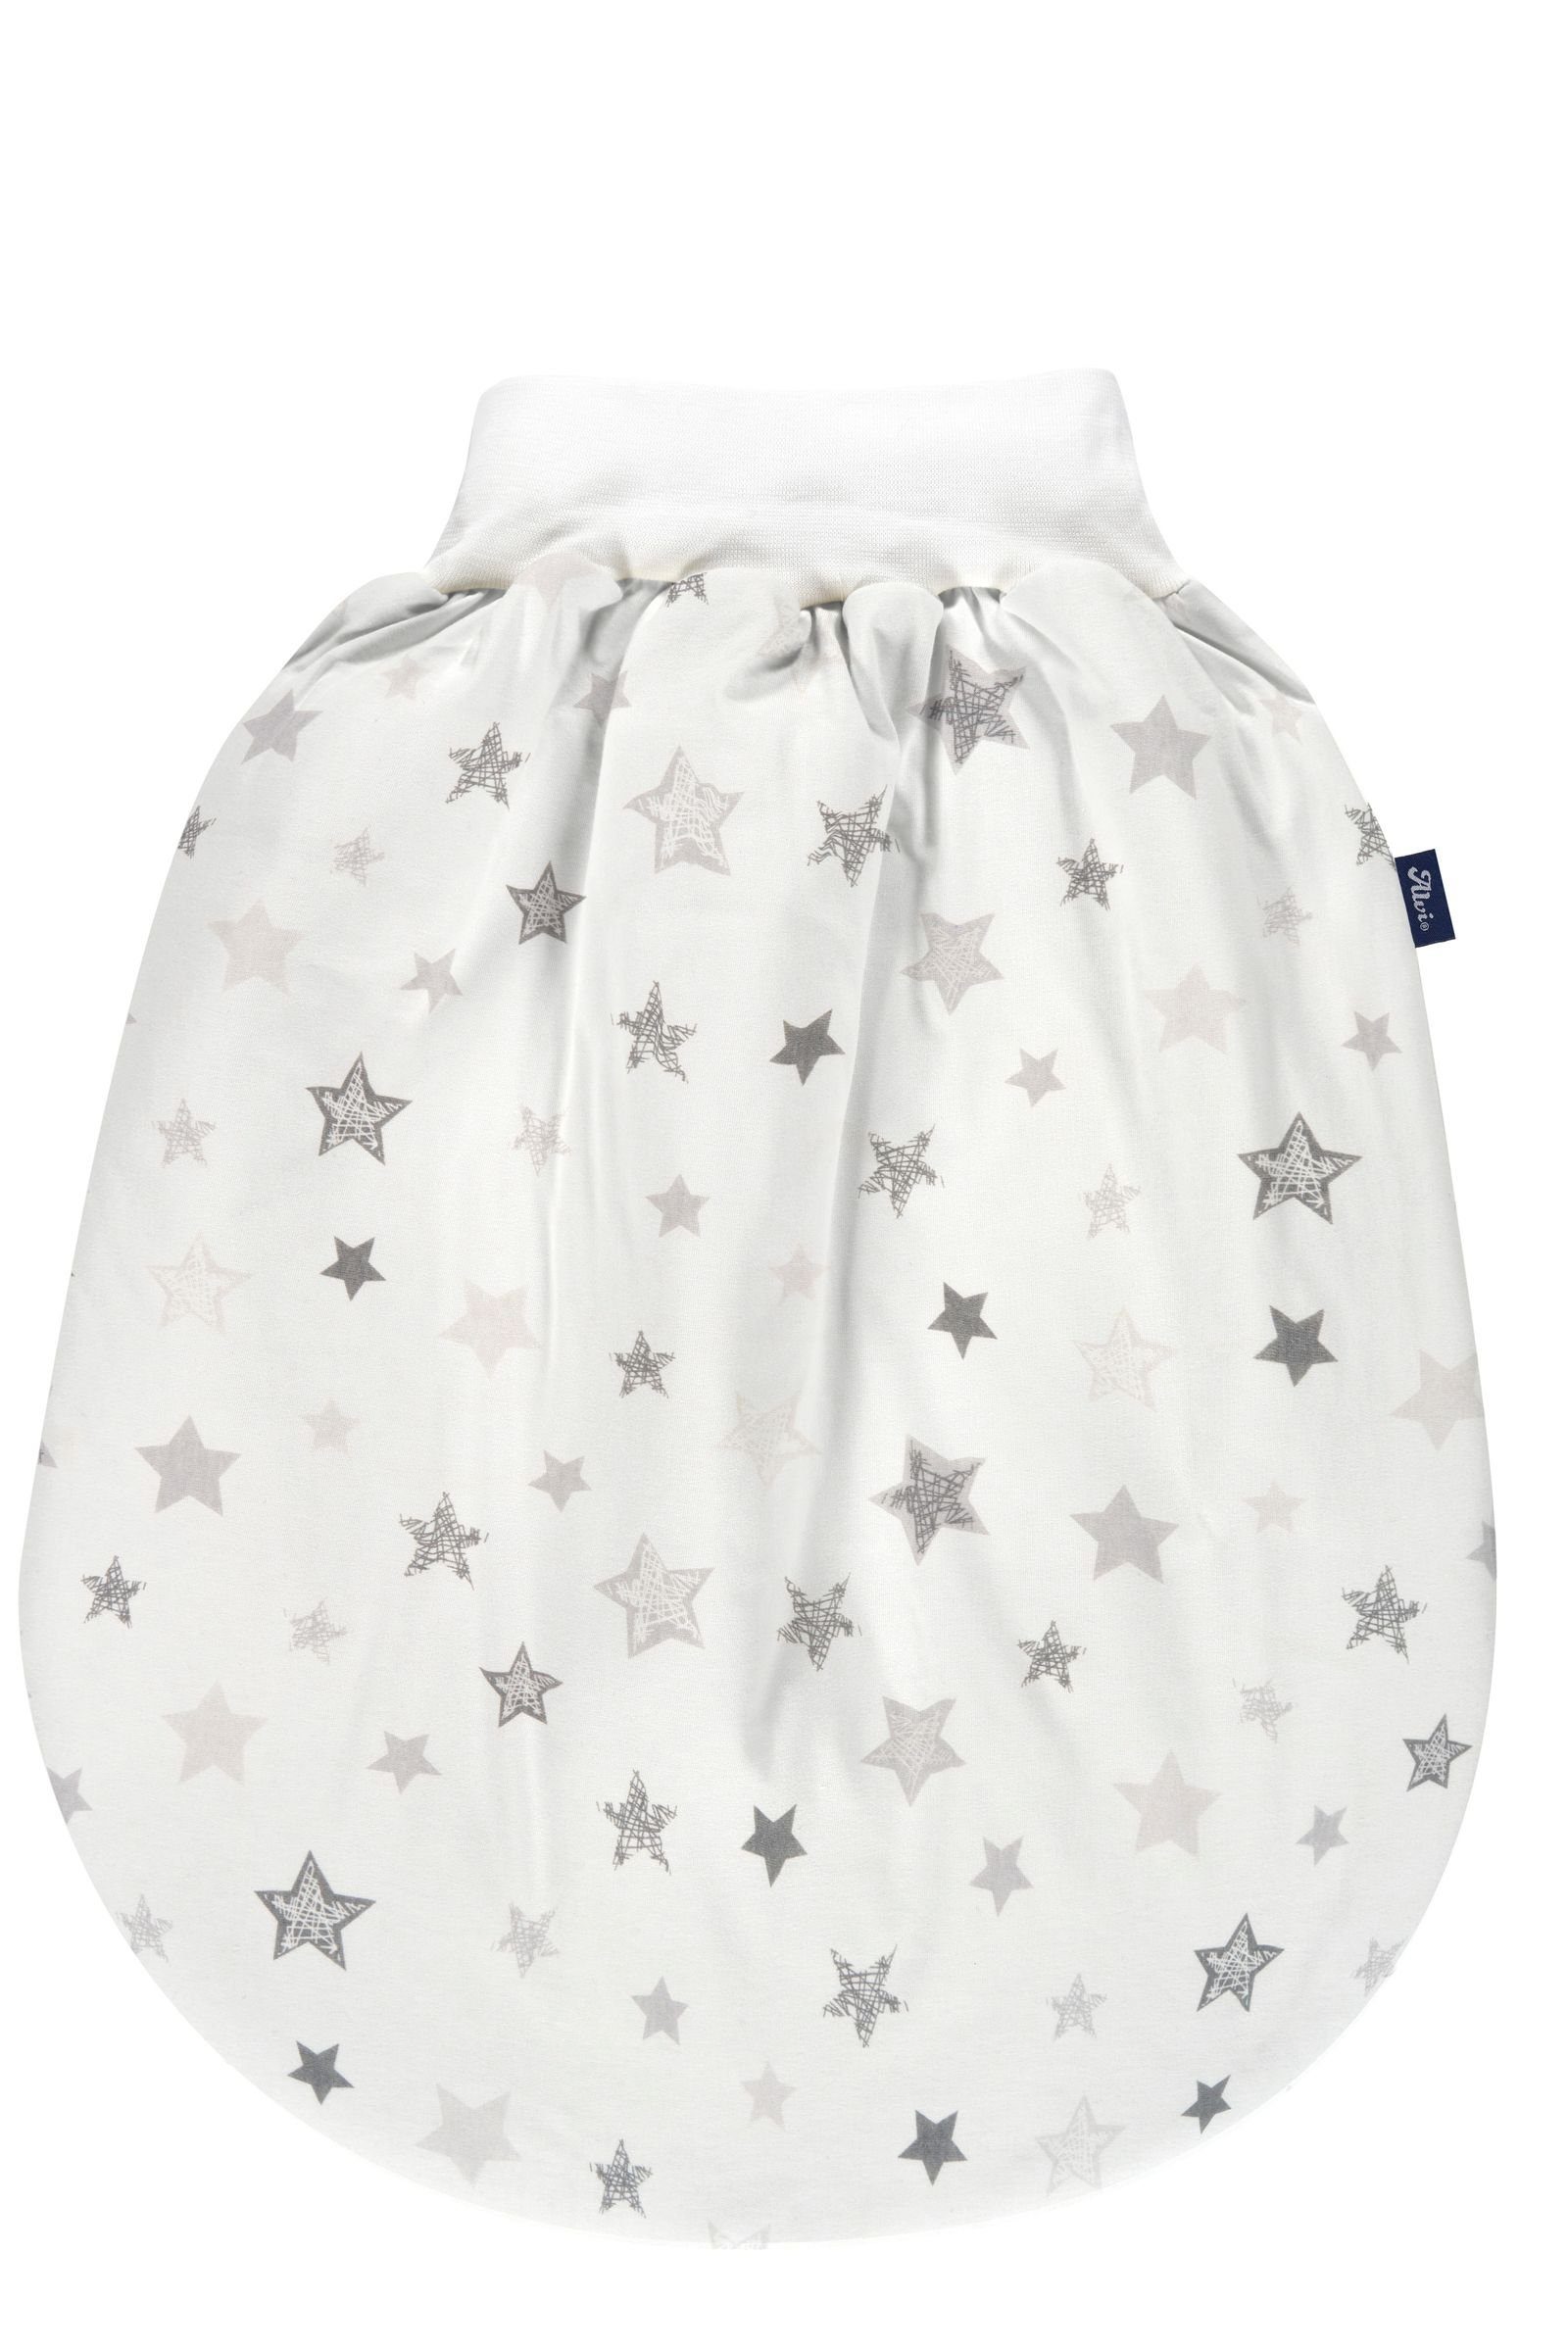 Baby Babyschlafsack Thermo Exclusiv Stars Silver Schlupfmäxchen Alvi Alvi® XL